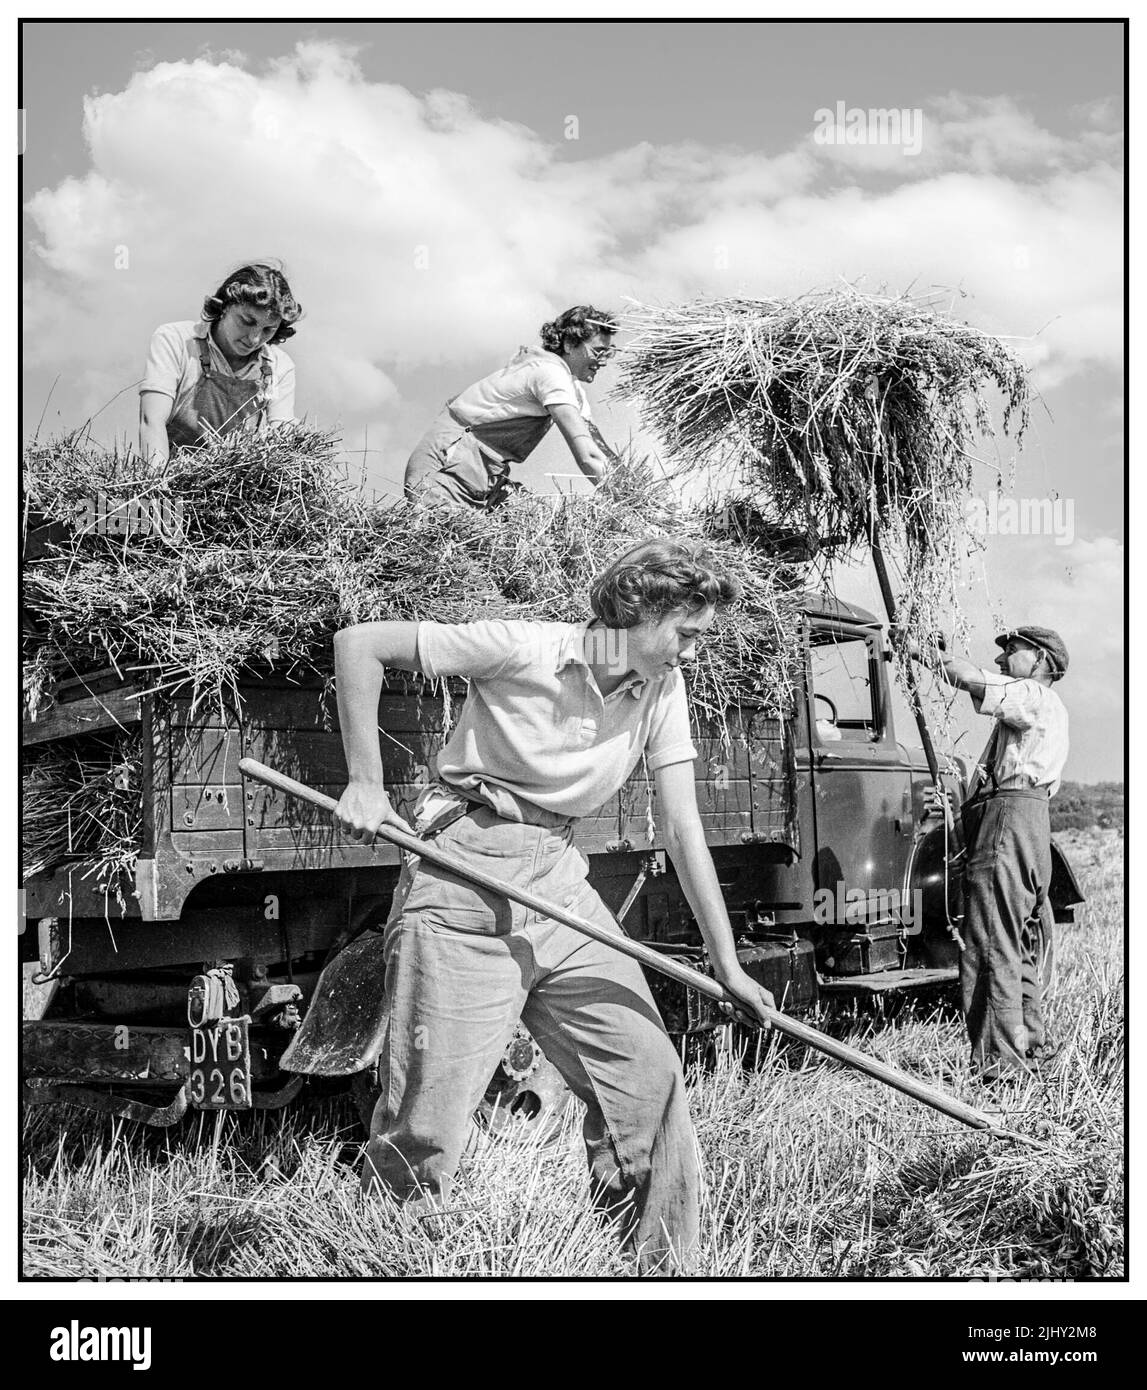 WW2 WOMENS LAND ARMY UK Food Production Harvesting a Mount Barton, Devon, Inghilterra, 1940s le Land Girls aiutano un agricoltore a caricare l'avena raccolta in un camion al sole a Hollow Moor, Devon.1942 Woman's Land Army. L'UCK ha lavorato alla fornitura di cibo durante la seconda guerra mondiale Foto Stock